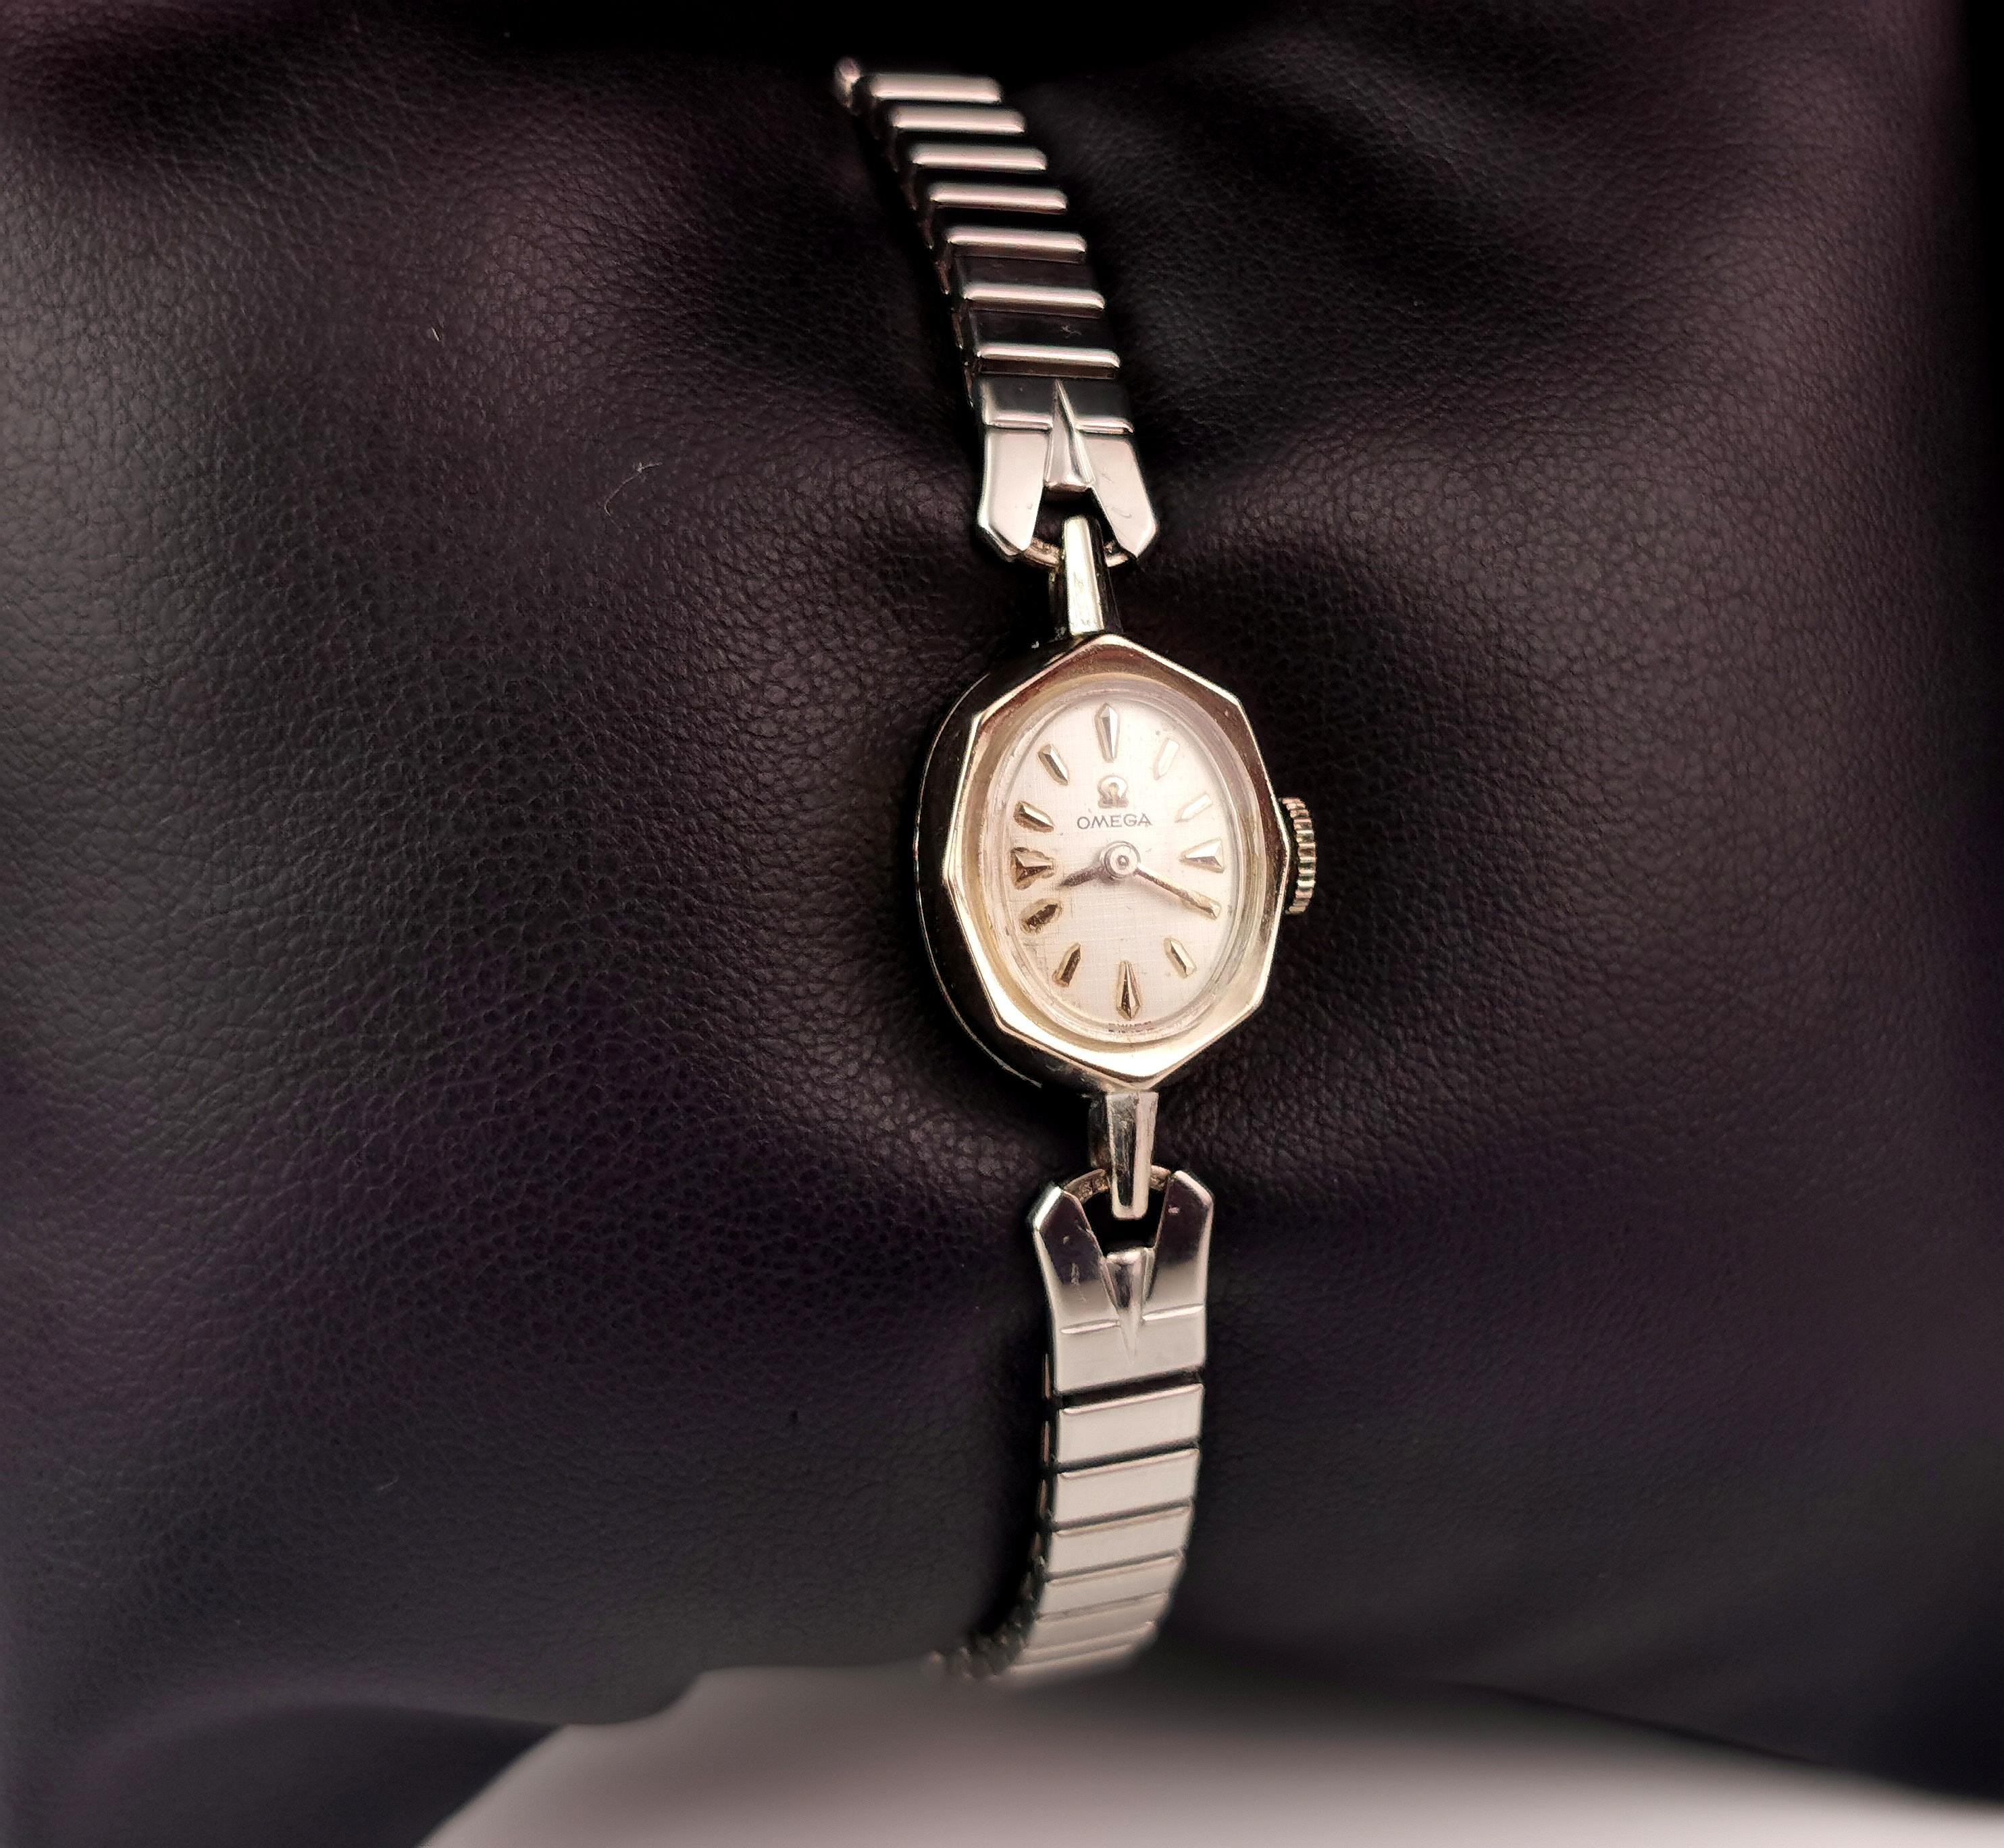 Eine attraktive Vintage-Damenarmbanduhr des renommierten Herstellers Omega.

Es handelt sich um eine 14-karätige, weißvergoldete Uhr mit einem silberfarbenen Zifferblatt, schwarzen Ziffern und Zeigern und einem Handaufzug.

Auf dem Zifferblatt für